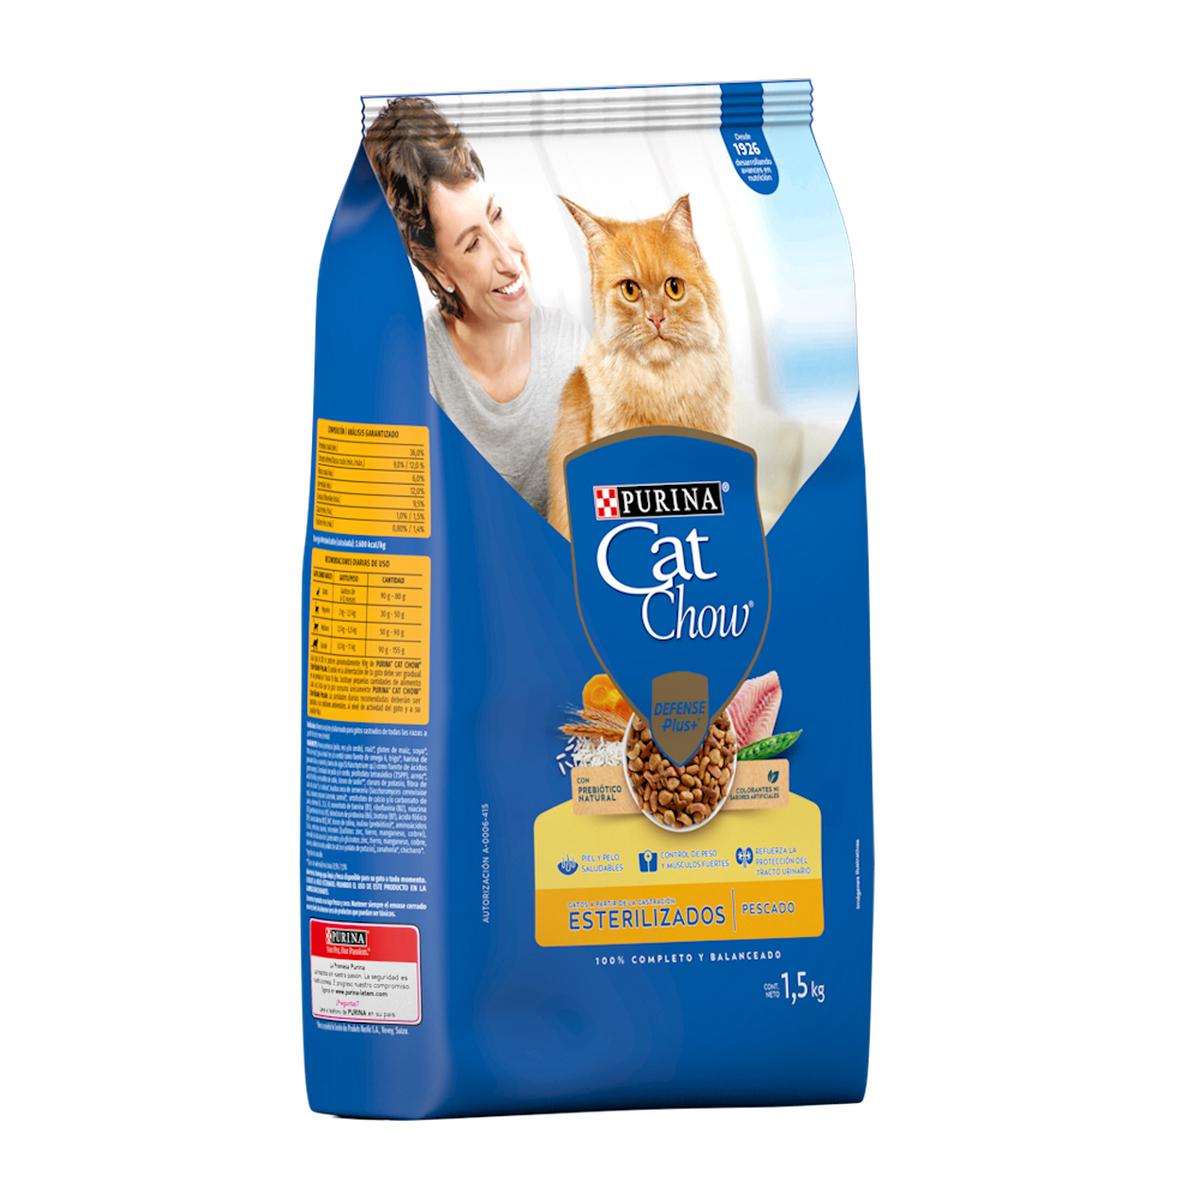 Purina Cat Chow Adultos Esterilizados Defense Plus Alimento Seco 1.5 Kg